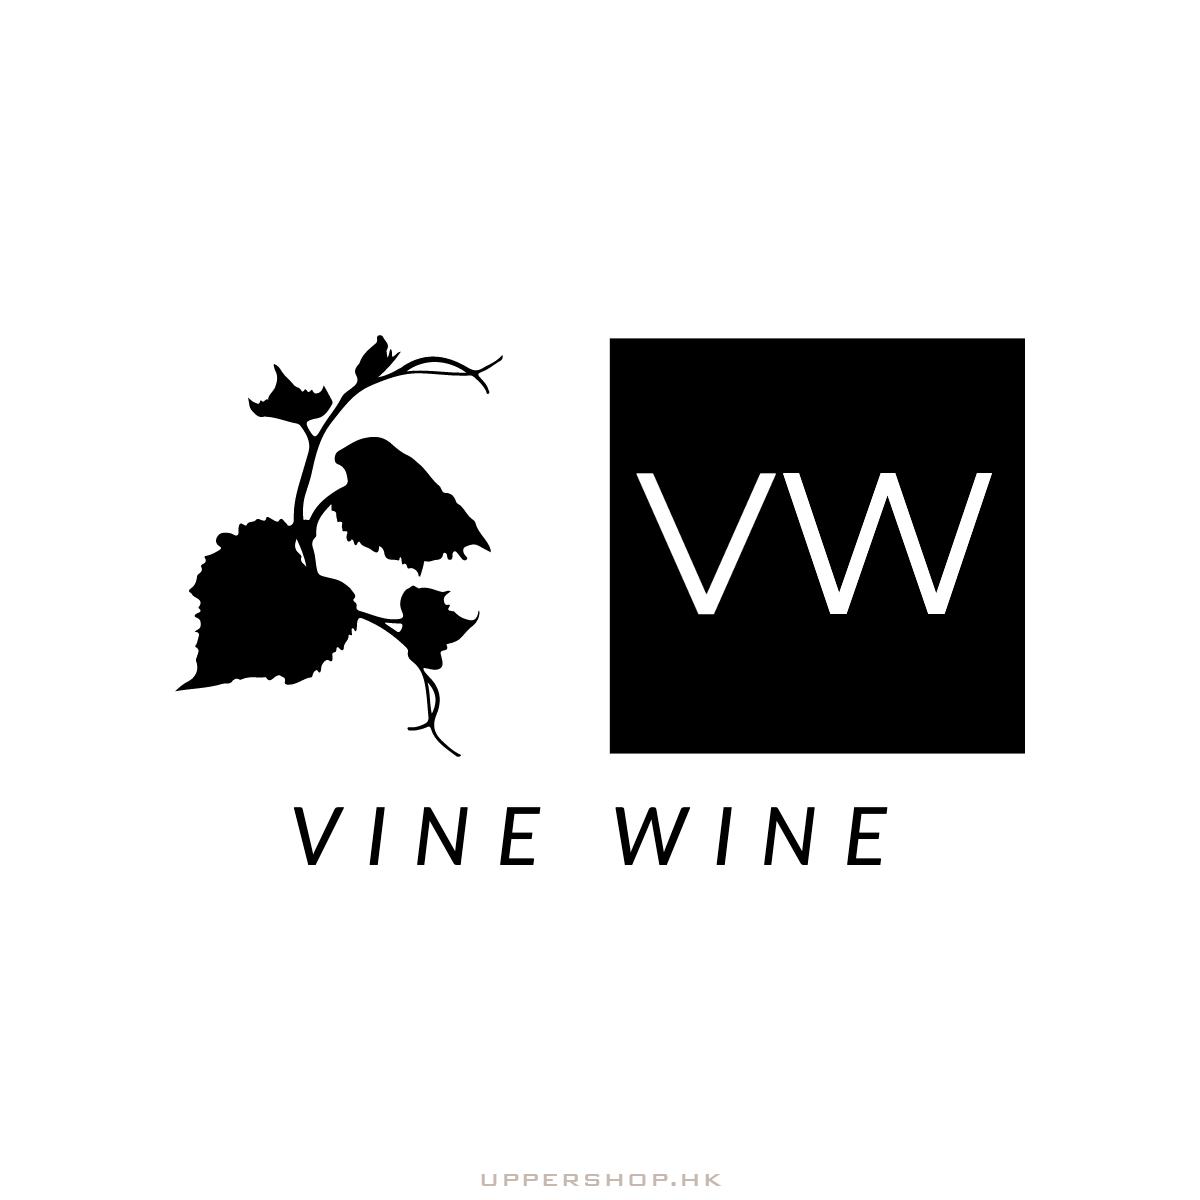 Vine Wine Ltd